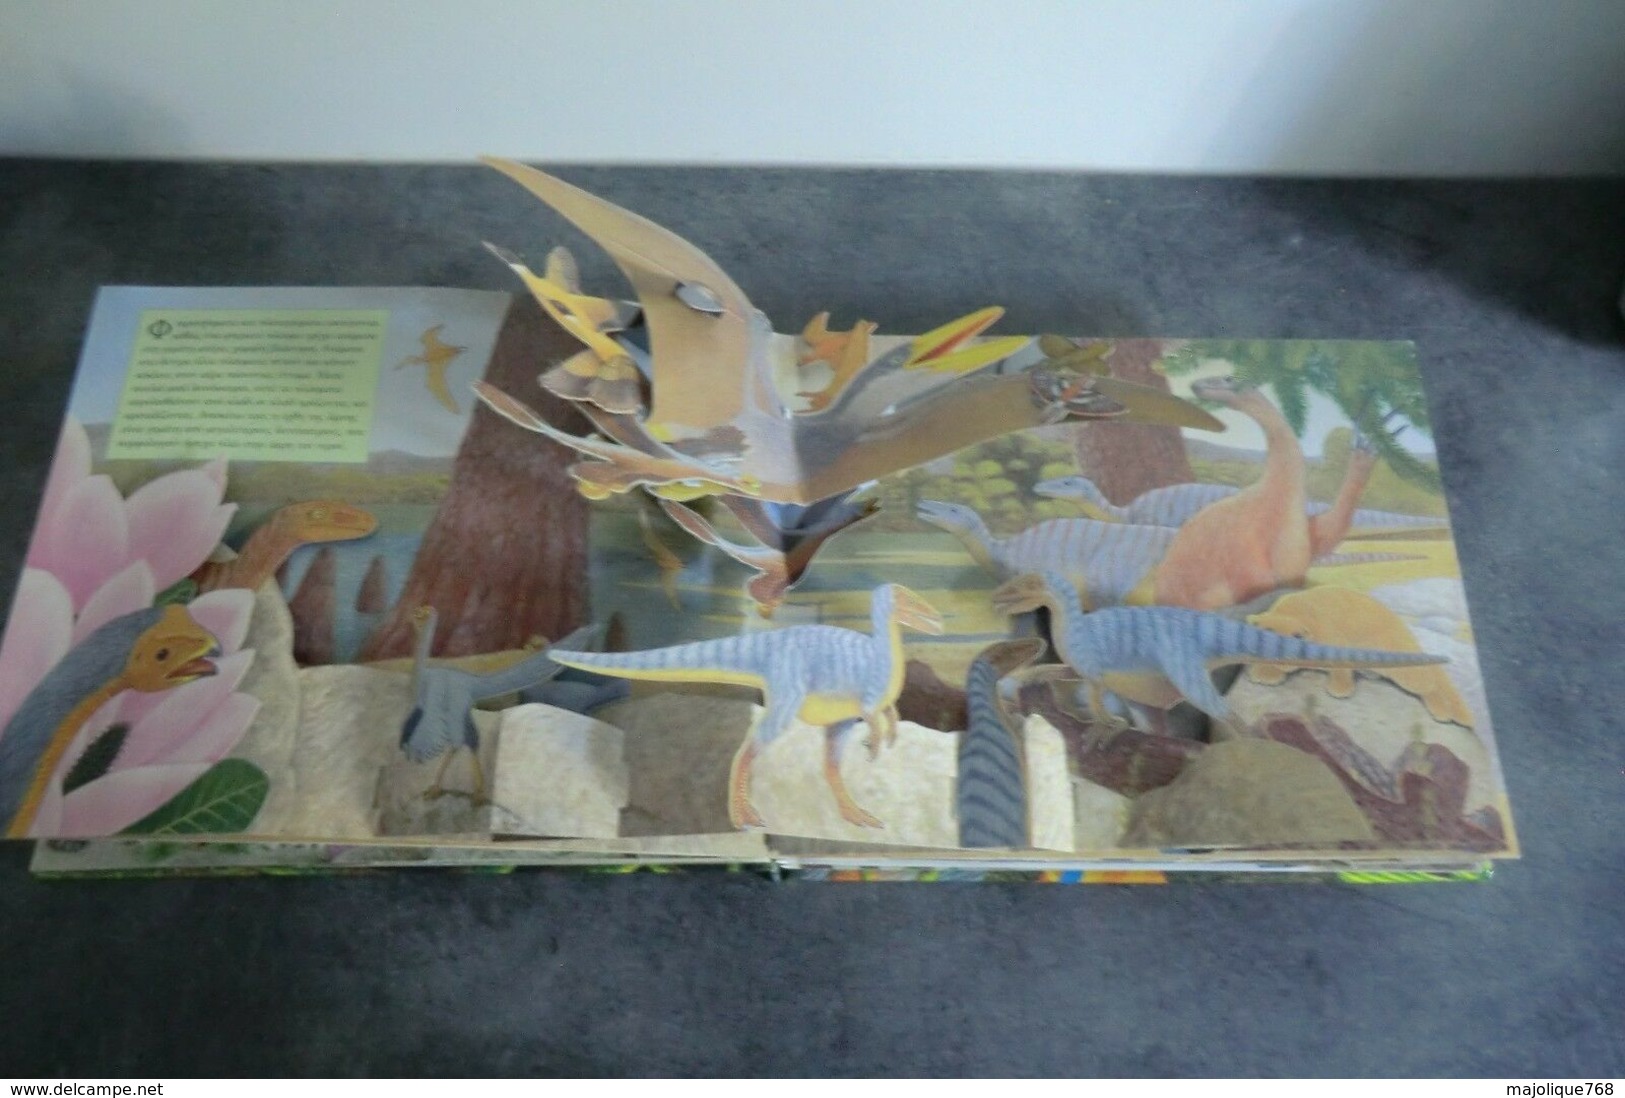 livre pop-up de dinosaures avec son et cries d'animaux - en langue grec - 2008 -